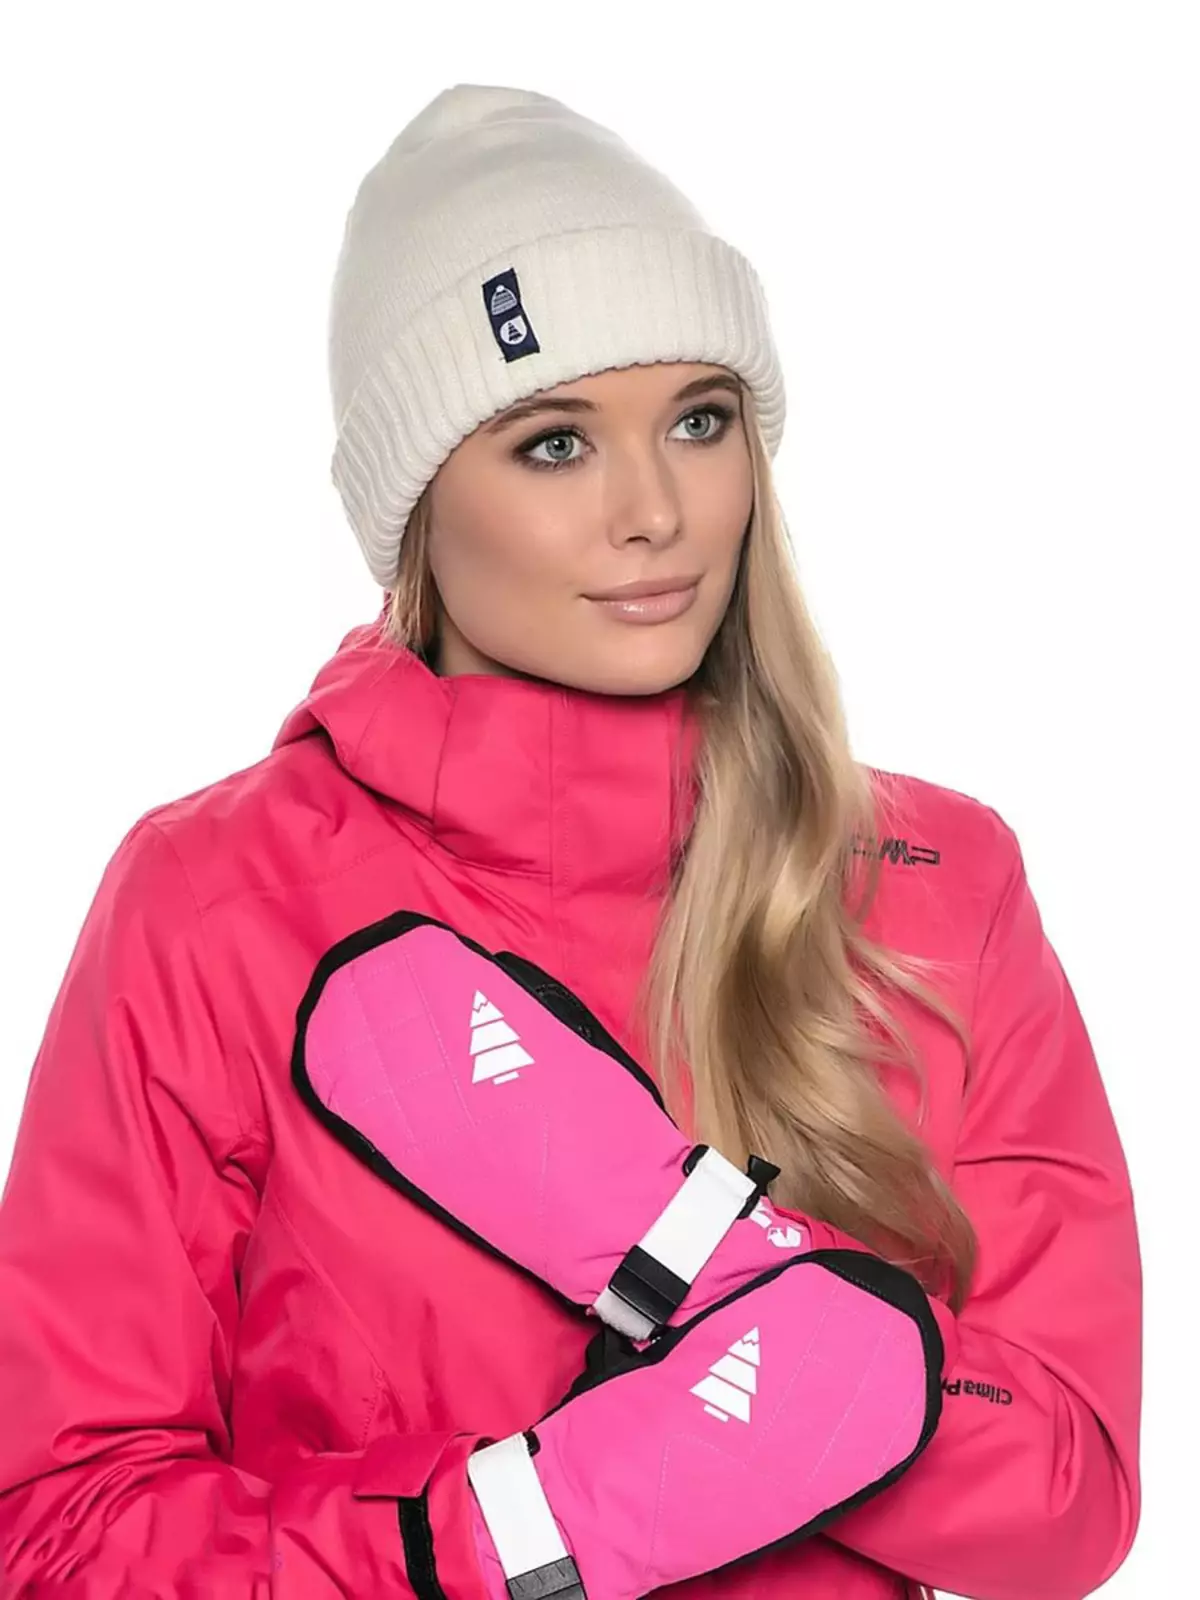 Skihandsker (61 billeder): Kvinders ski modeller til sport, oversigt over populære mærker - Reysshe, Head, Salomon, Leki 15203_26